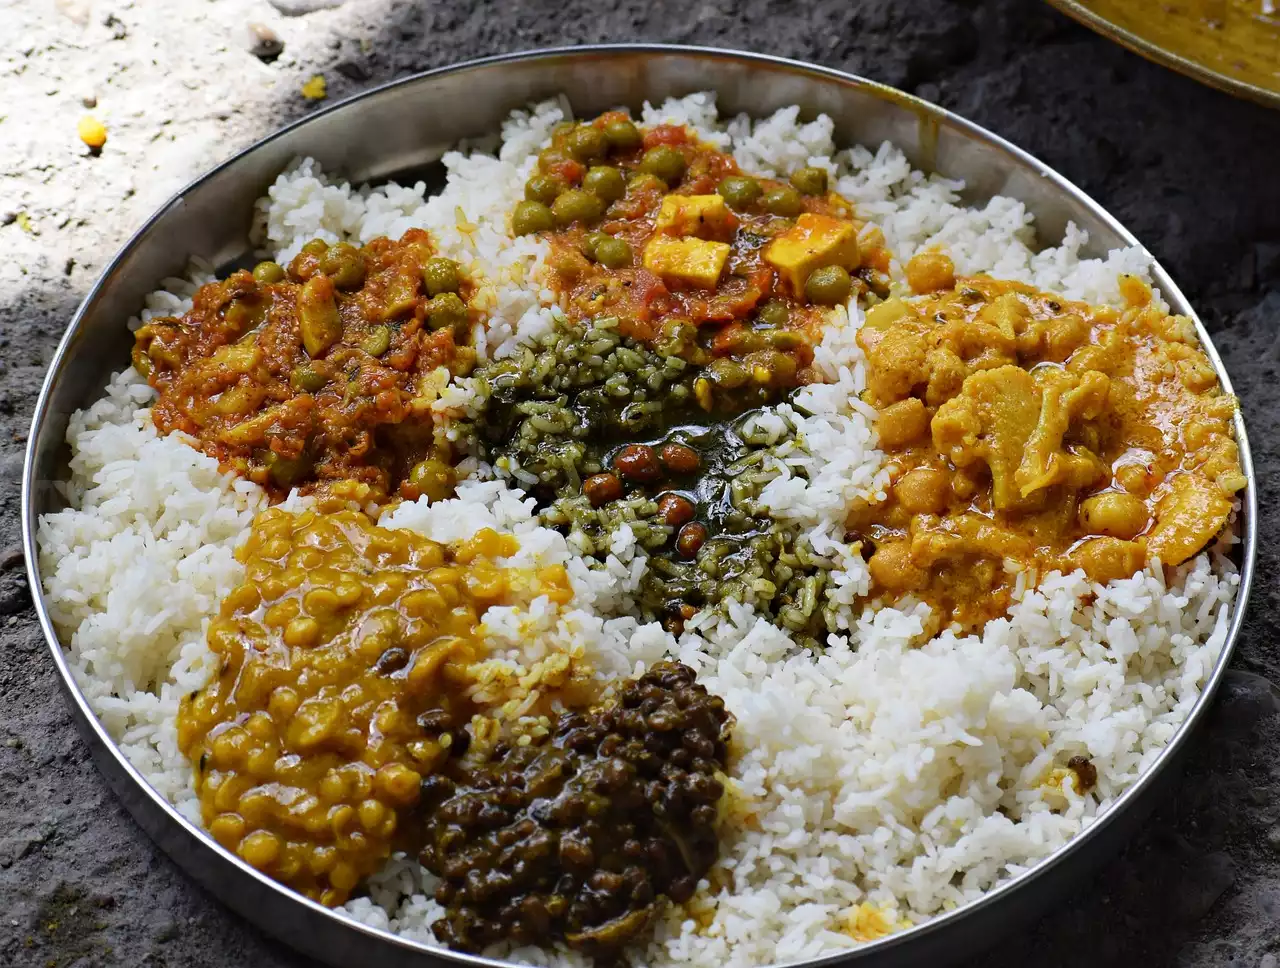 الفوائد الصحية للأطعمة الهندية التقليدية: استكشاف الخصائص الغذائية والطبية